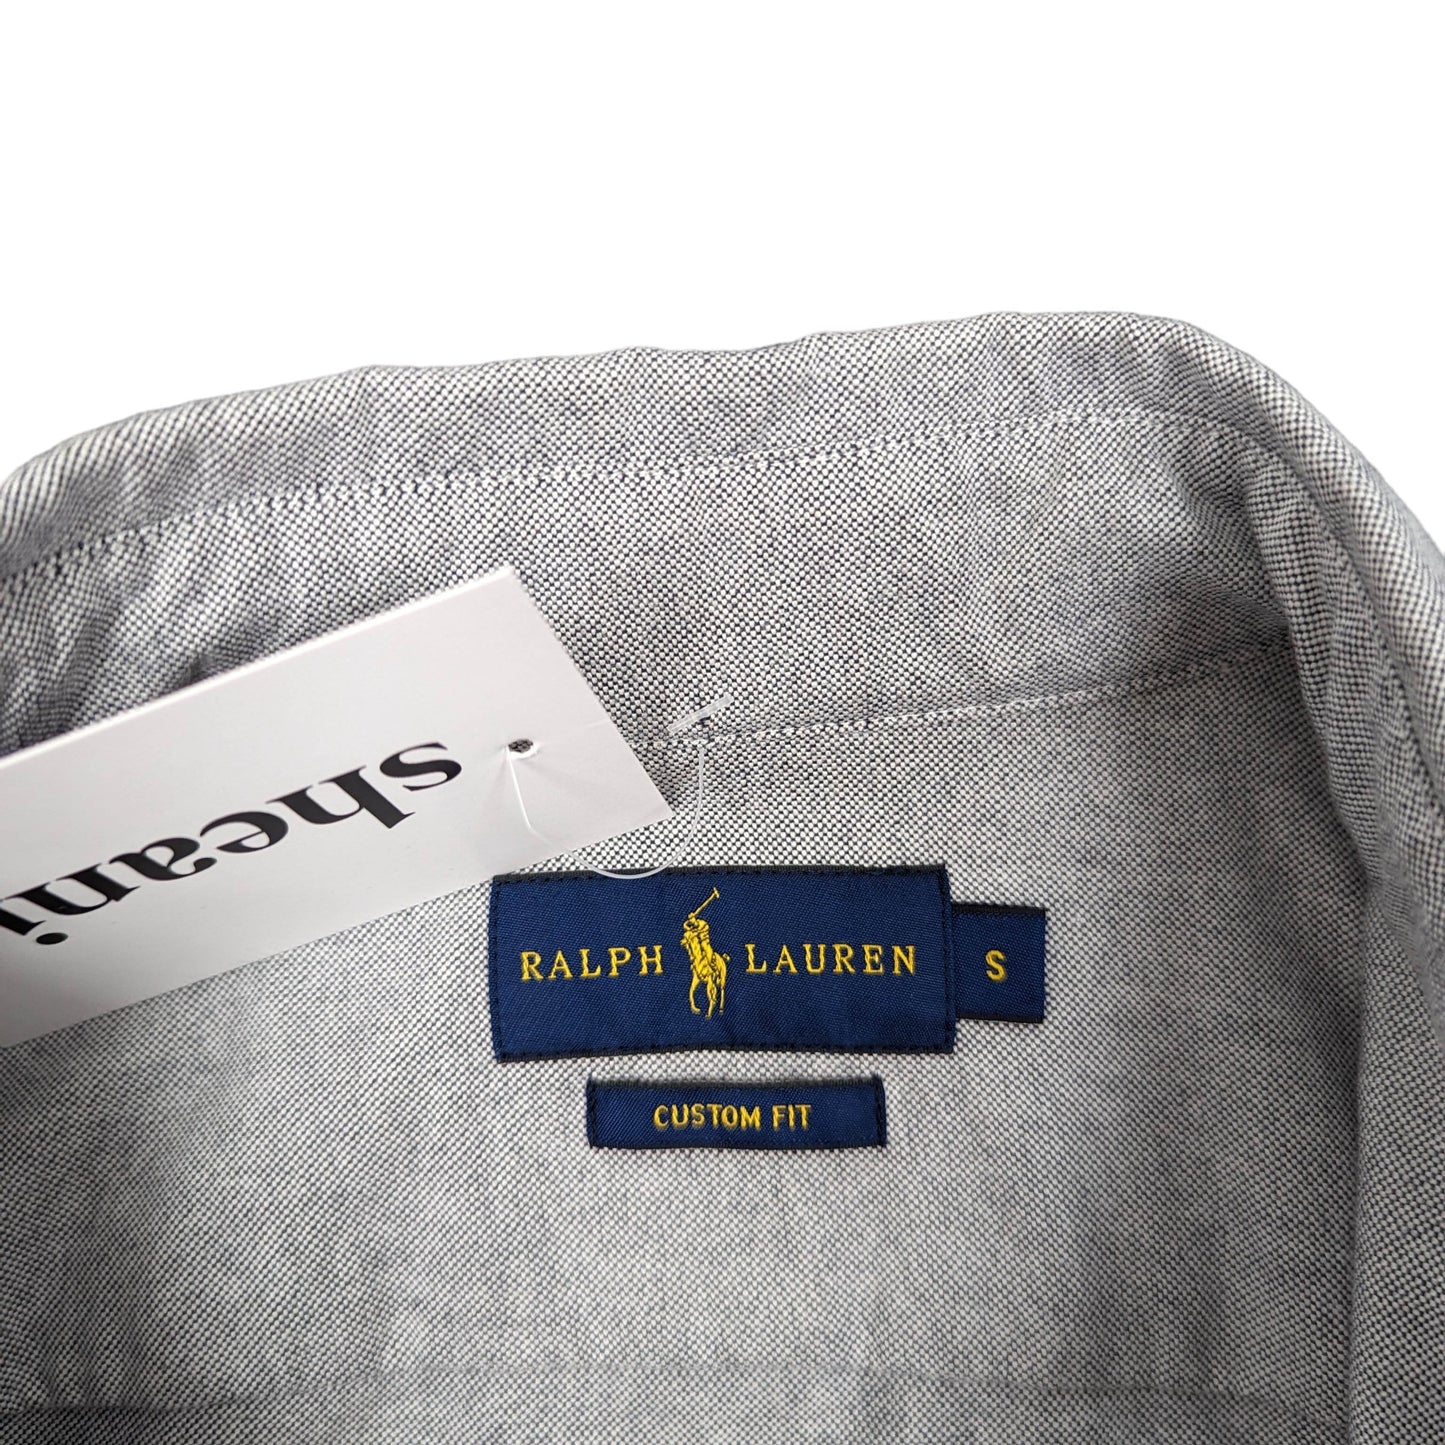 Ralph Lauren Custom Fit Shirt Size S